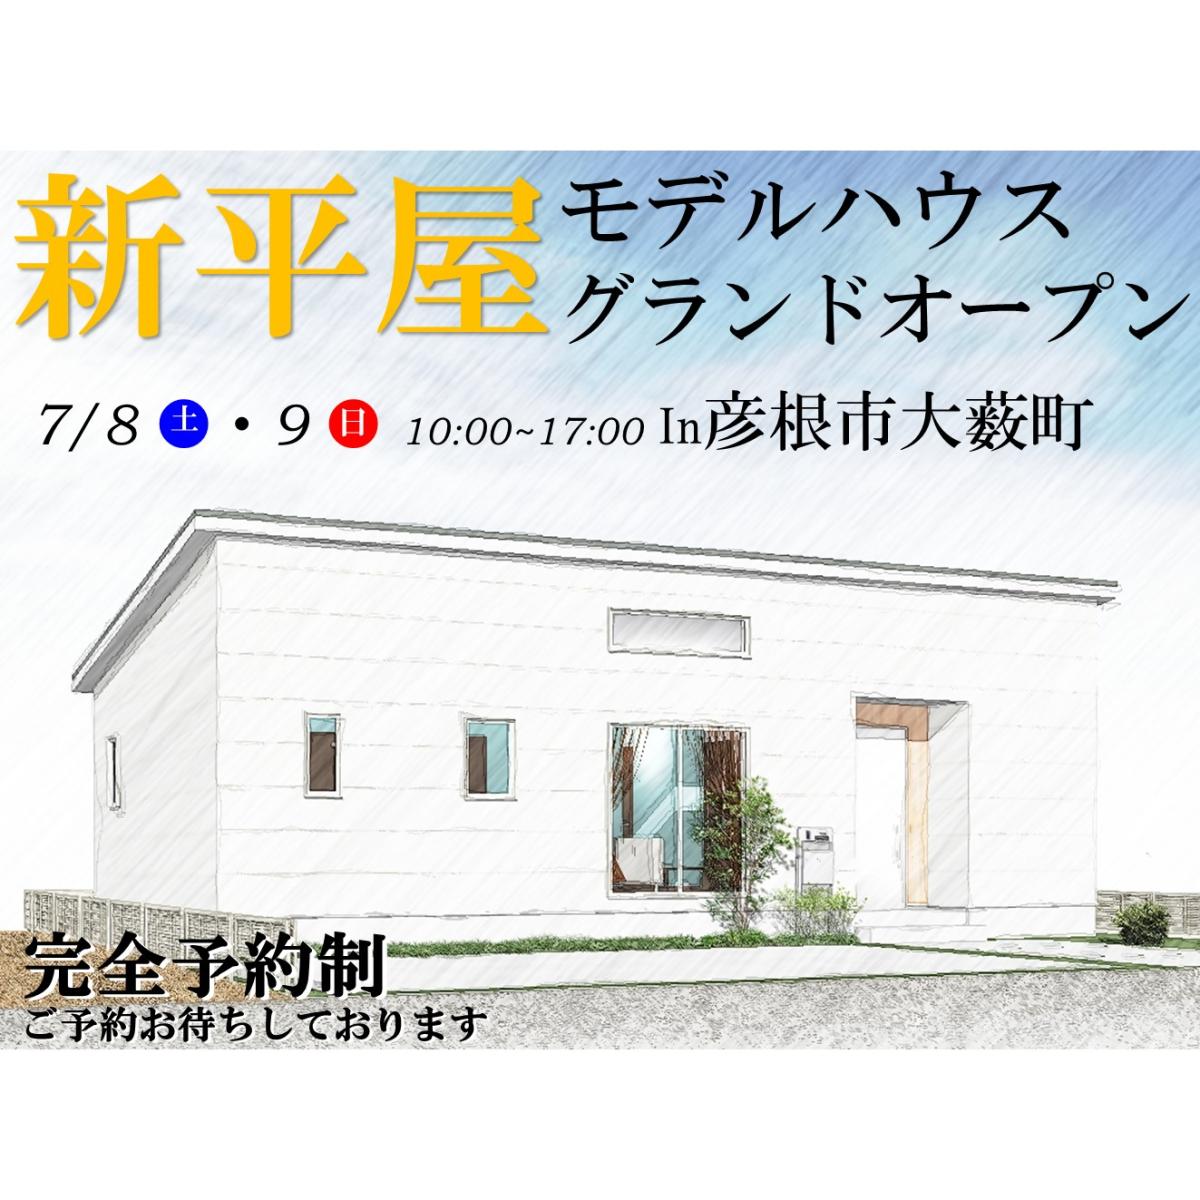 ”【彦根店】新平屋モデルハウス グランドオープン!!